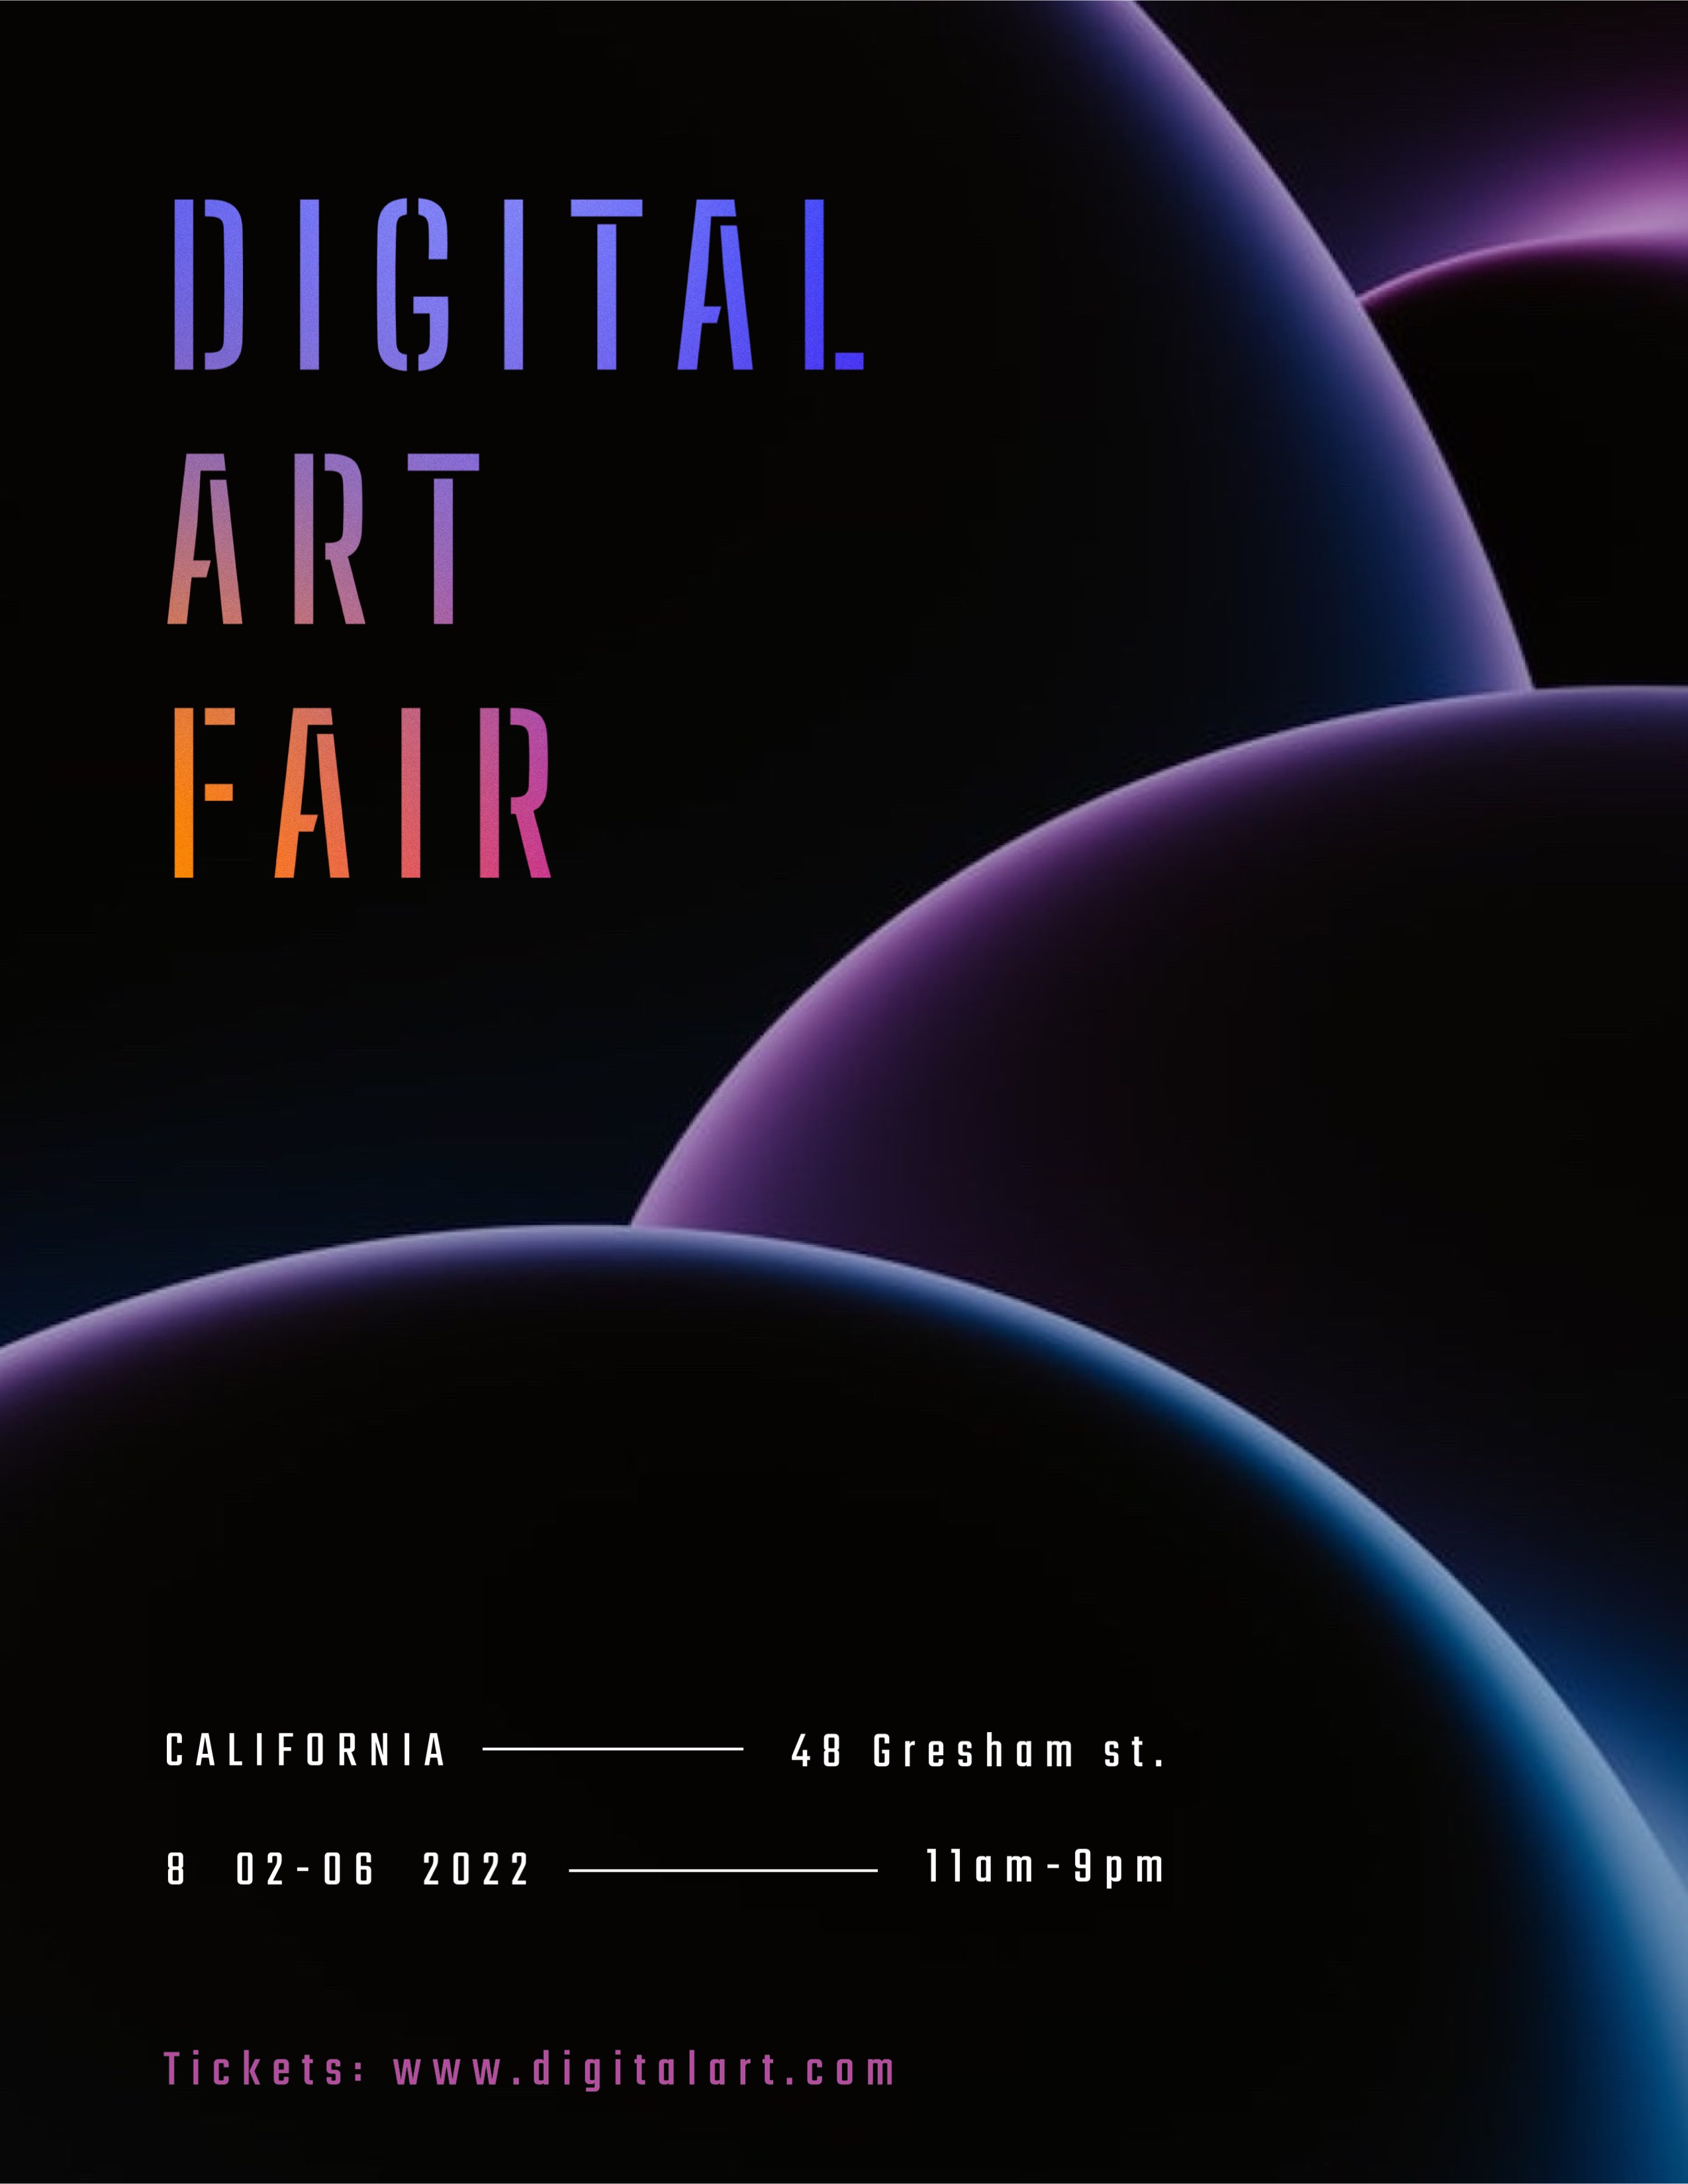 Digital Art Fair Event Flyer Template